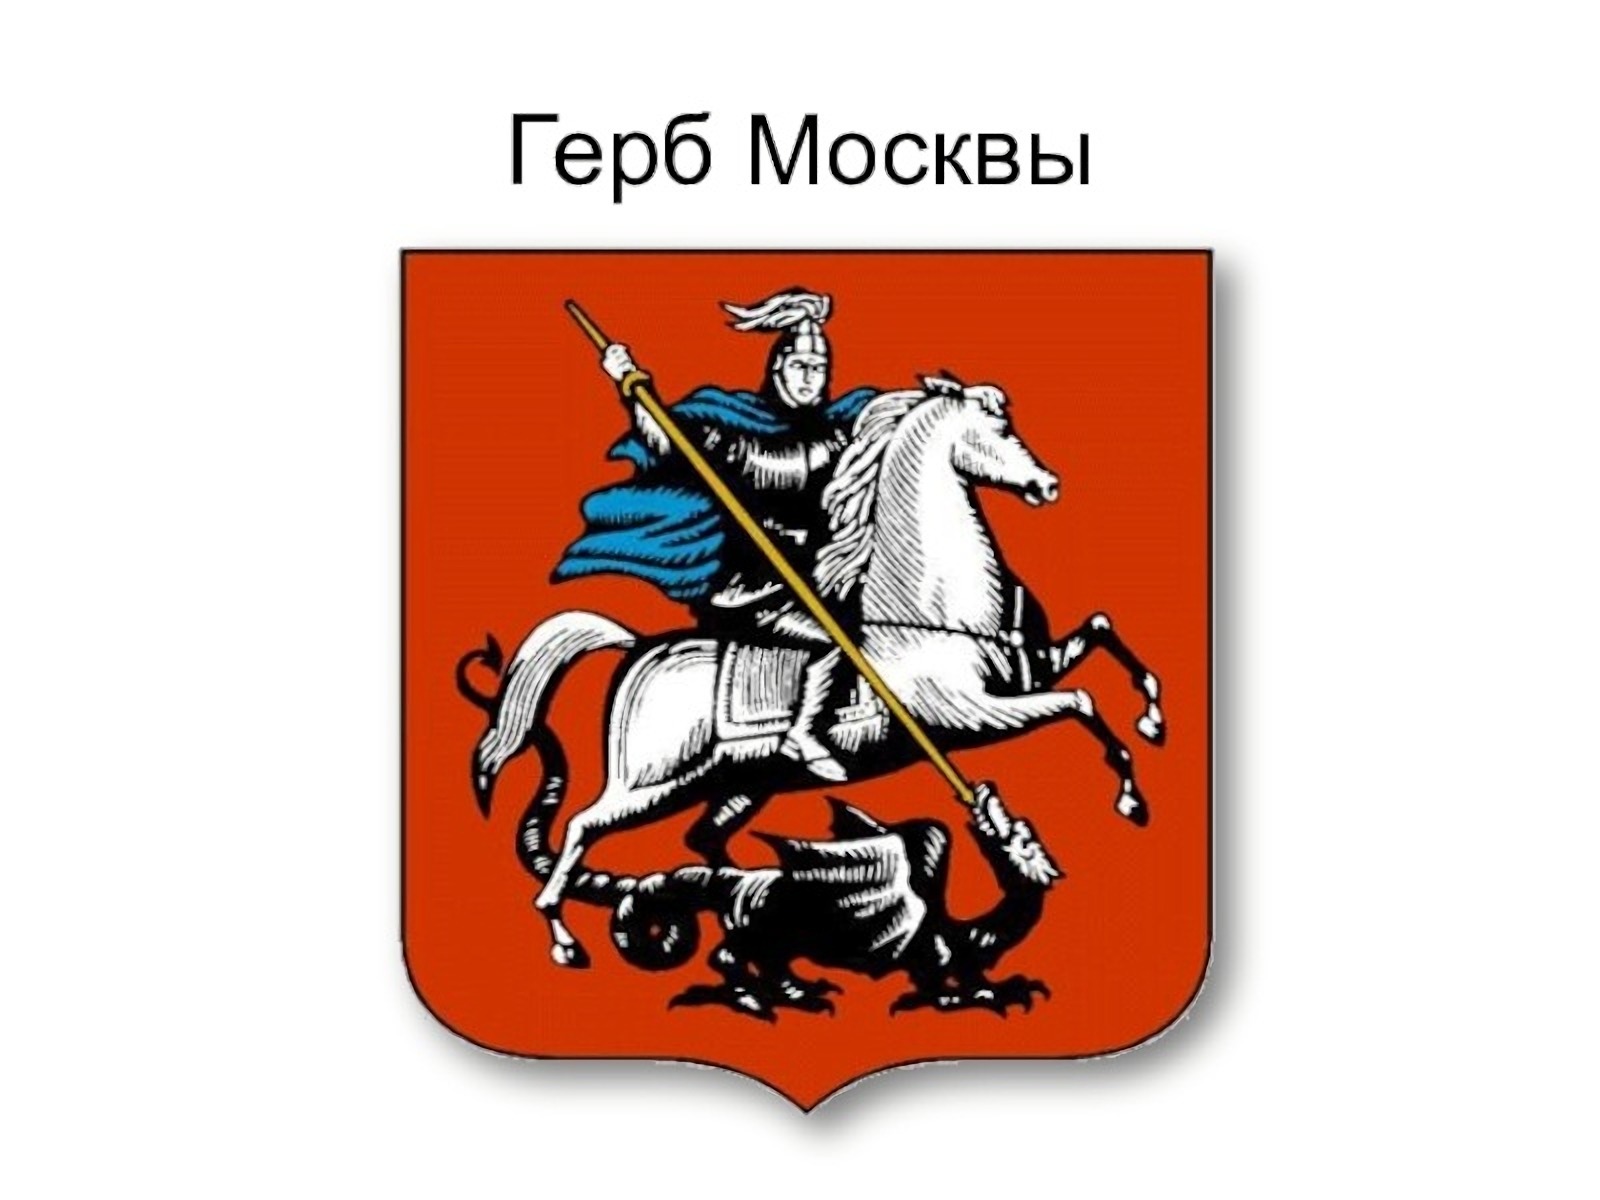 Москва столица россии герб москвы 2 класс